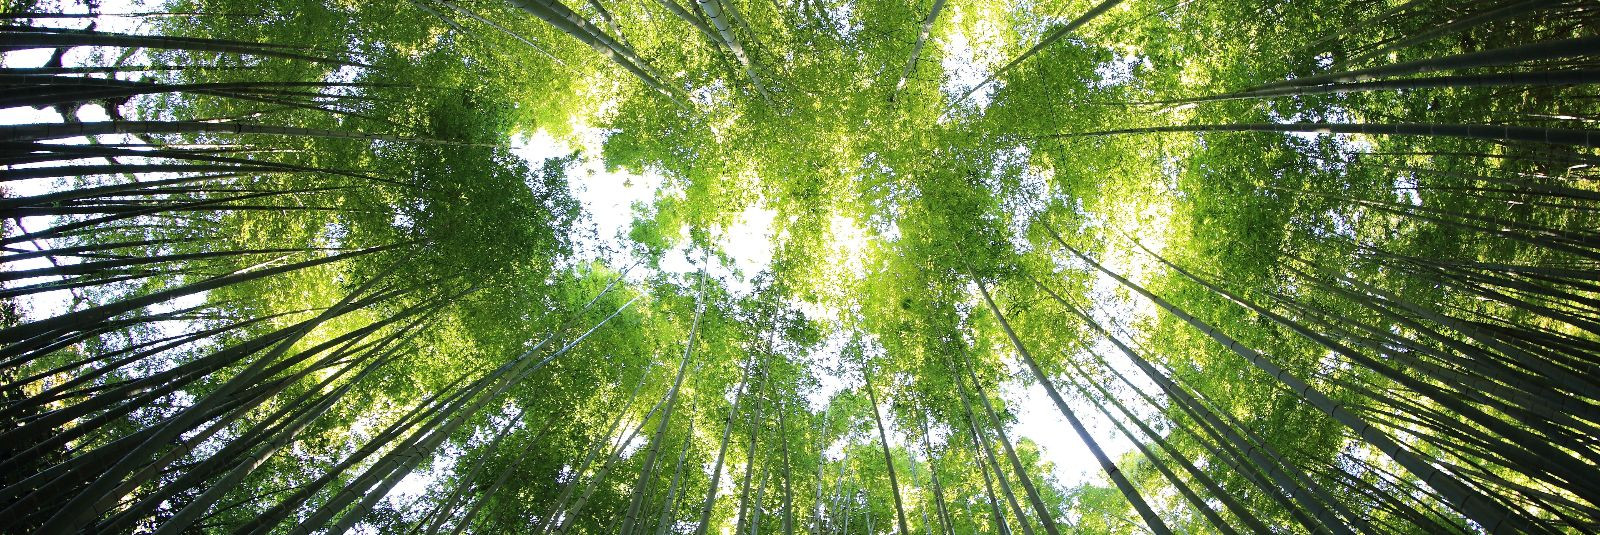 Metsade jätkusuutlikkus on üks olulisemaid teemasid tänapäeva ...